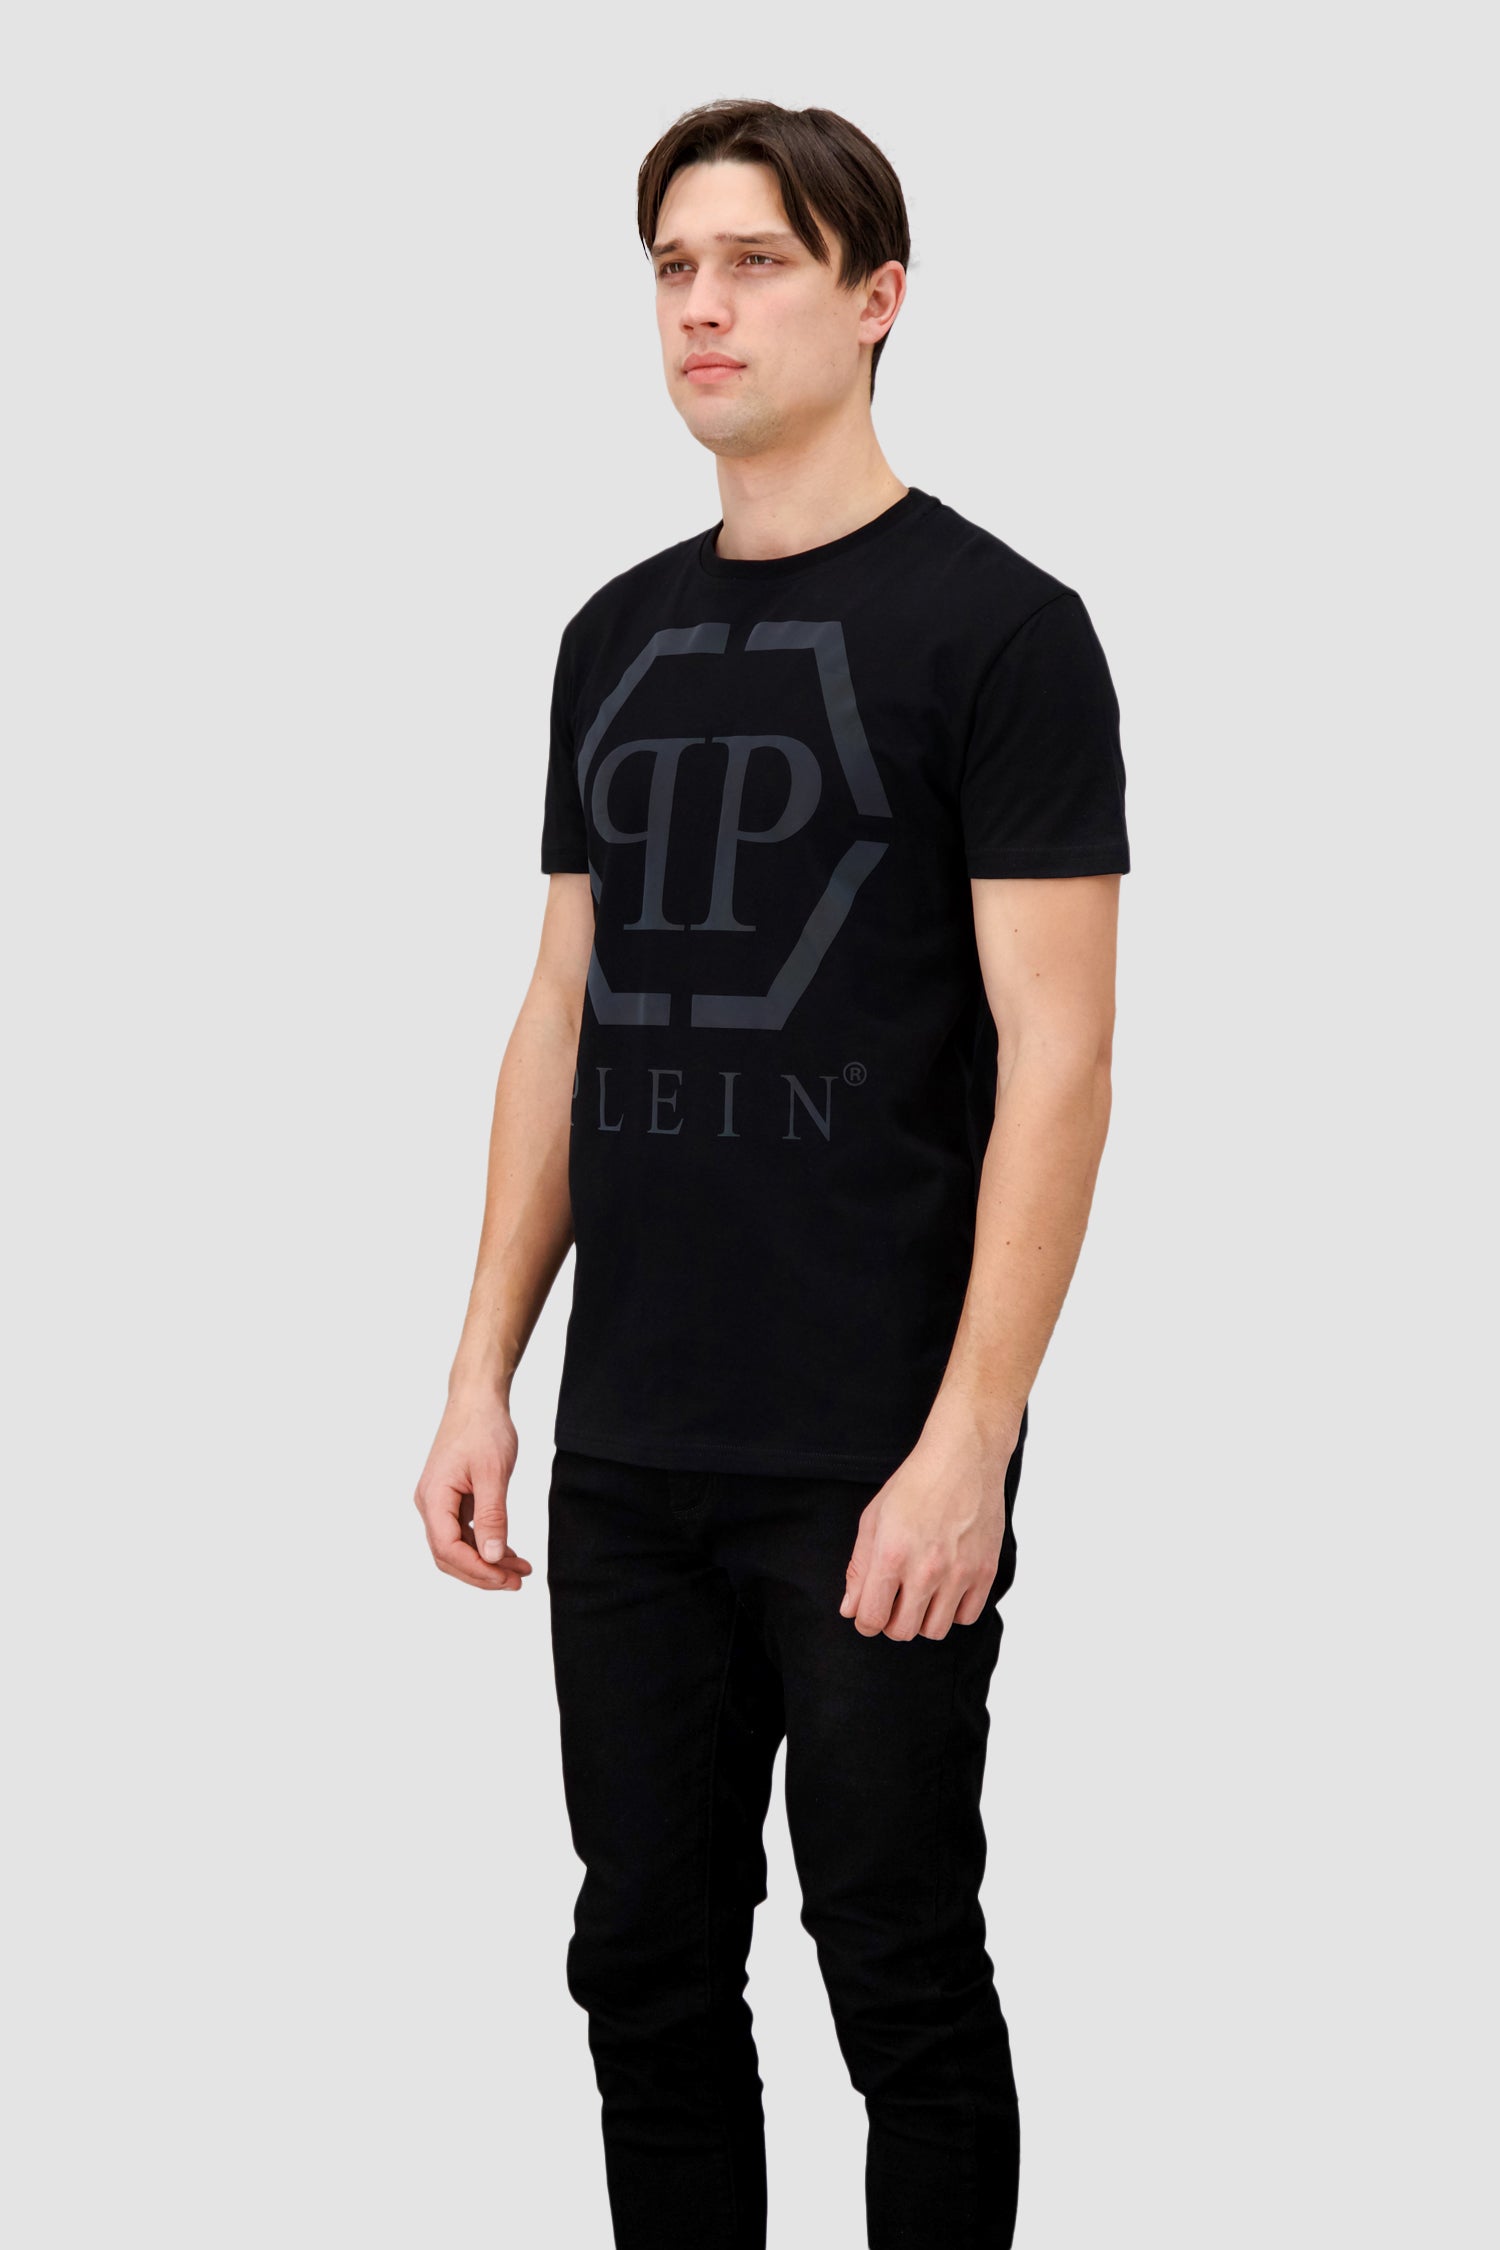 Philipp Plein Black SS Hexagon Round Neck T-Shirt